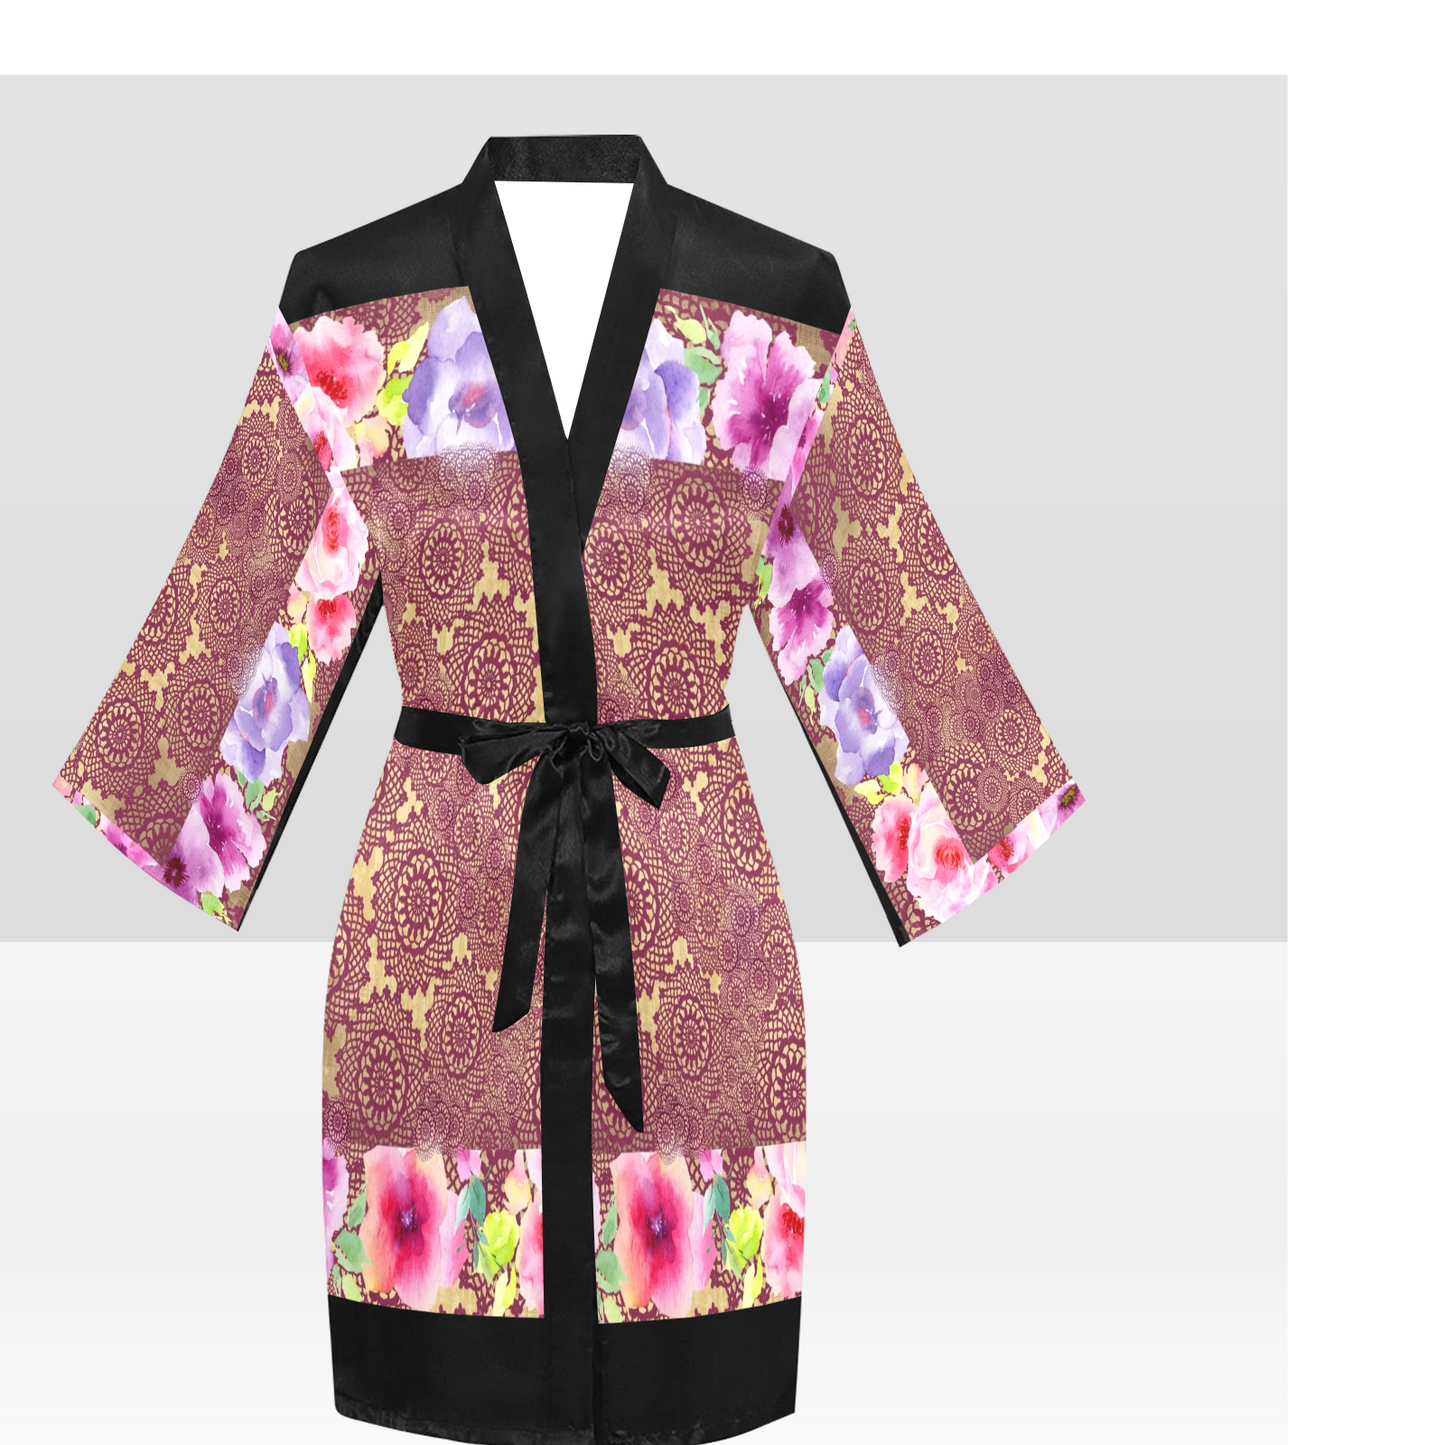 Victorian Lace Kimono Robe, Black or White Trim, Sizes XS to 2XL, Design 13